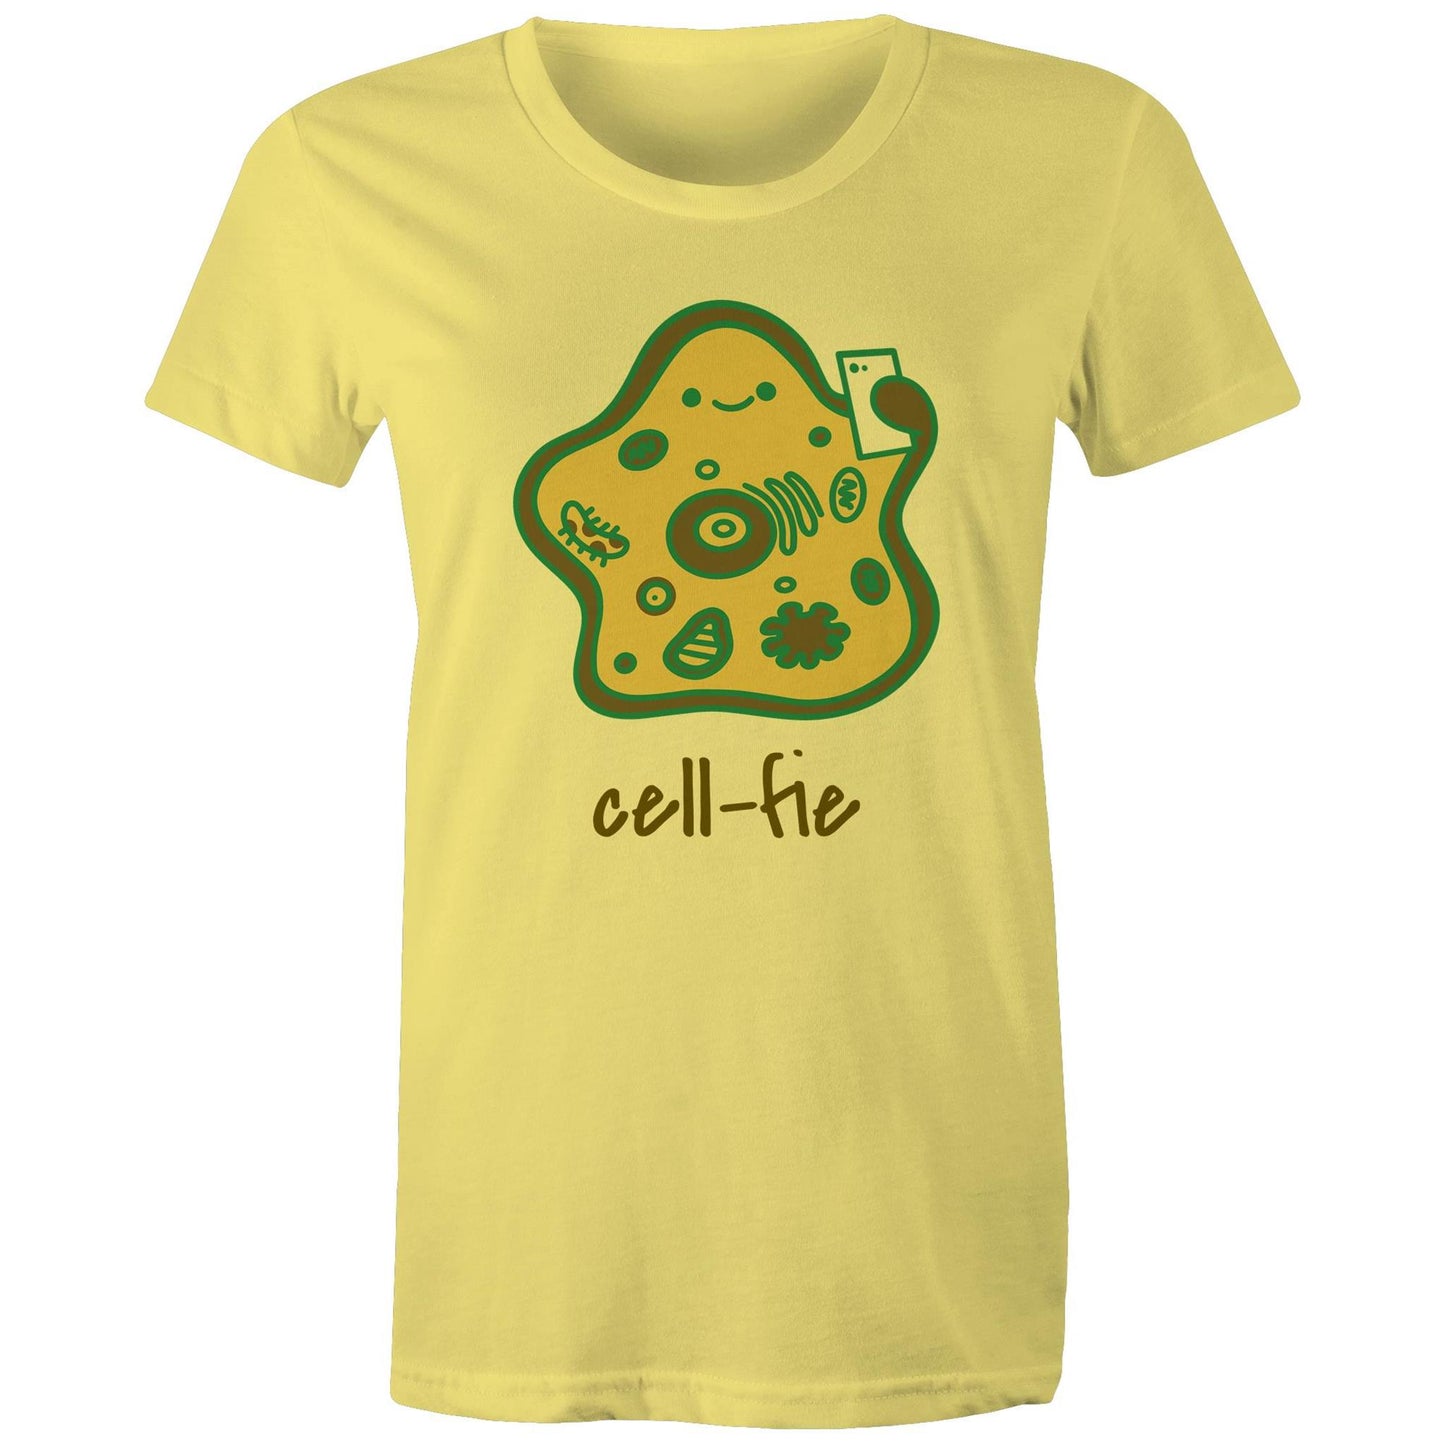 Cell-fie - Womens T-shirt Yellow Womens T-shirt Science